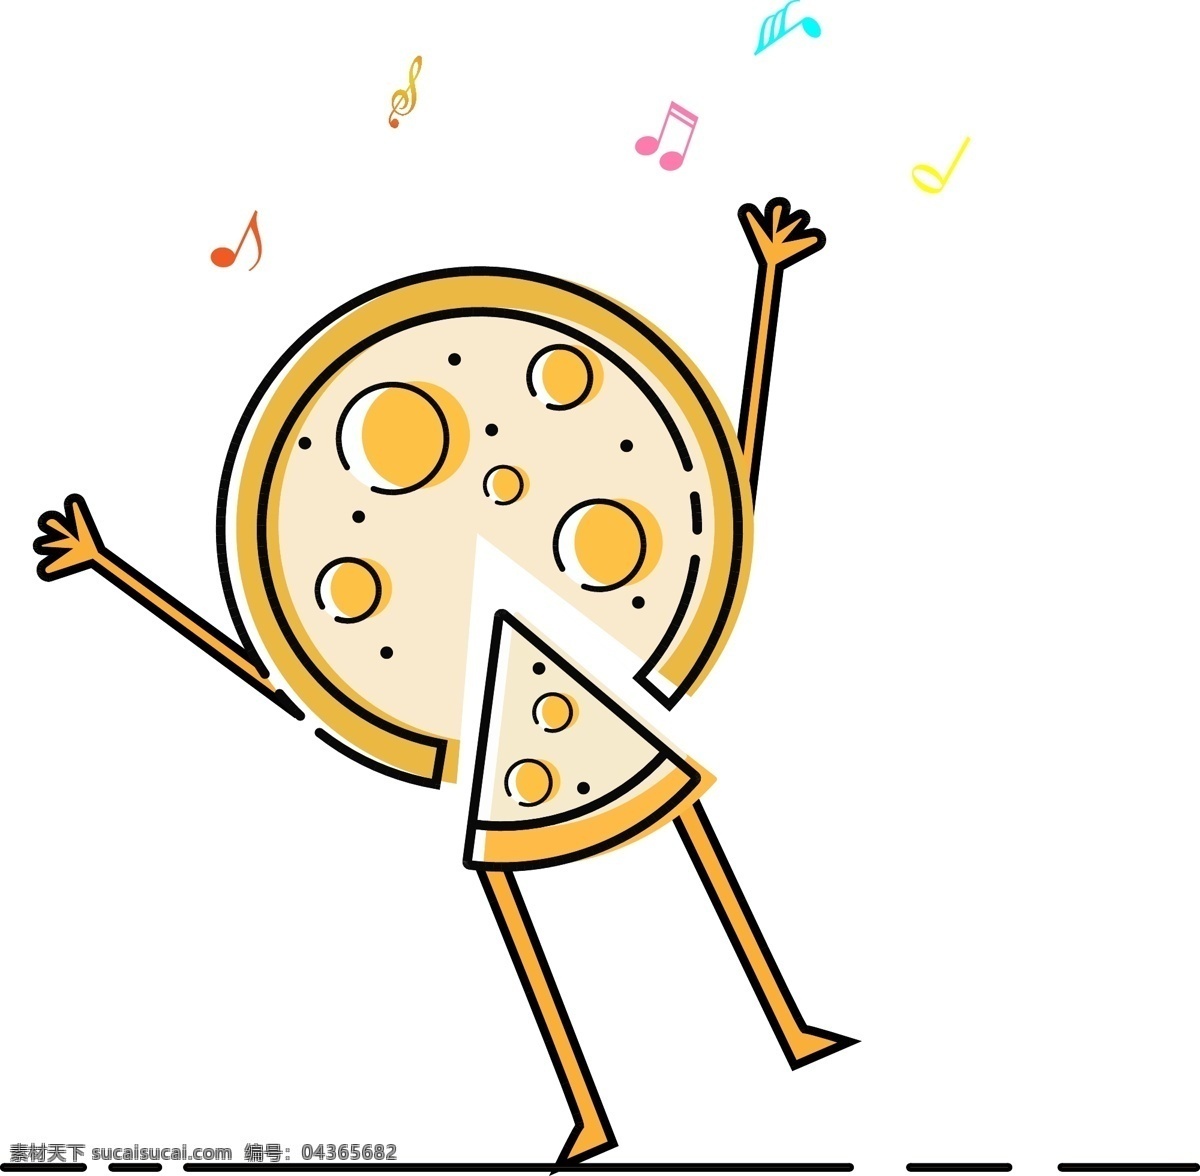 mbe 风格 跳舞 pizza 手绘 矢量 图标 mbe风格 卡通手绘 披萨